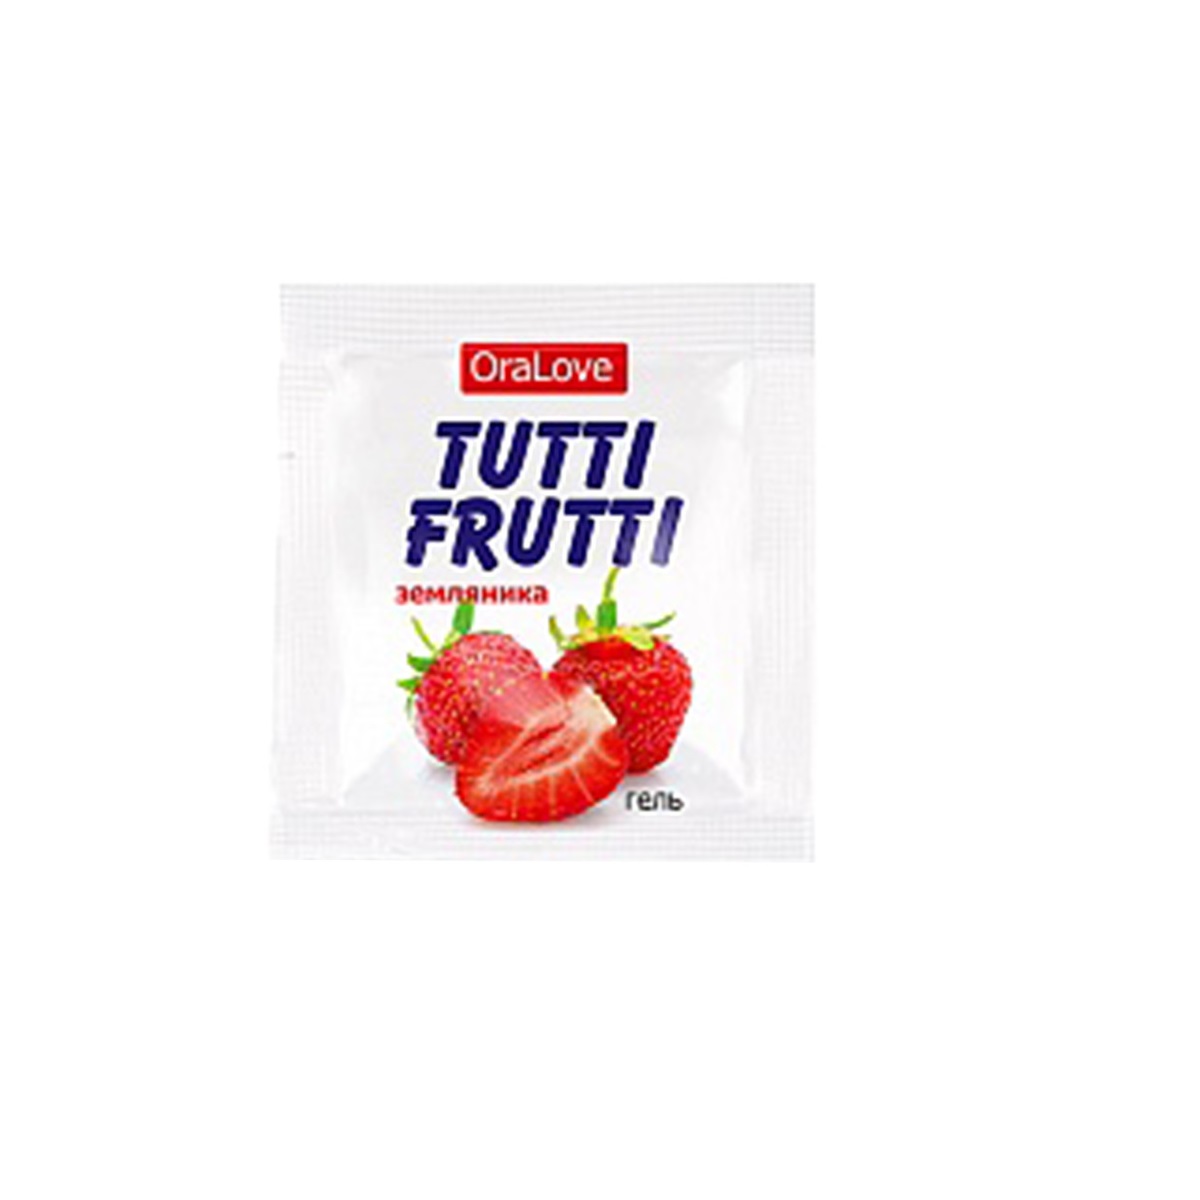 Съедобная гель-смазка TUTTI-FRUTTI для орального секса со вкусом земляники 4гр